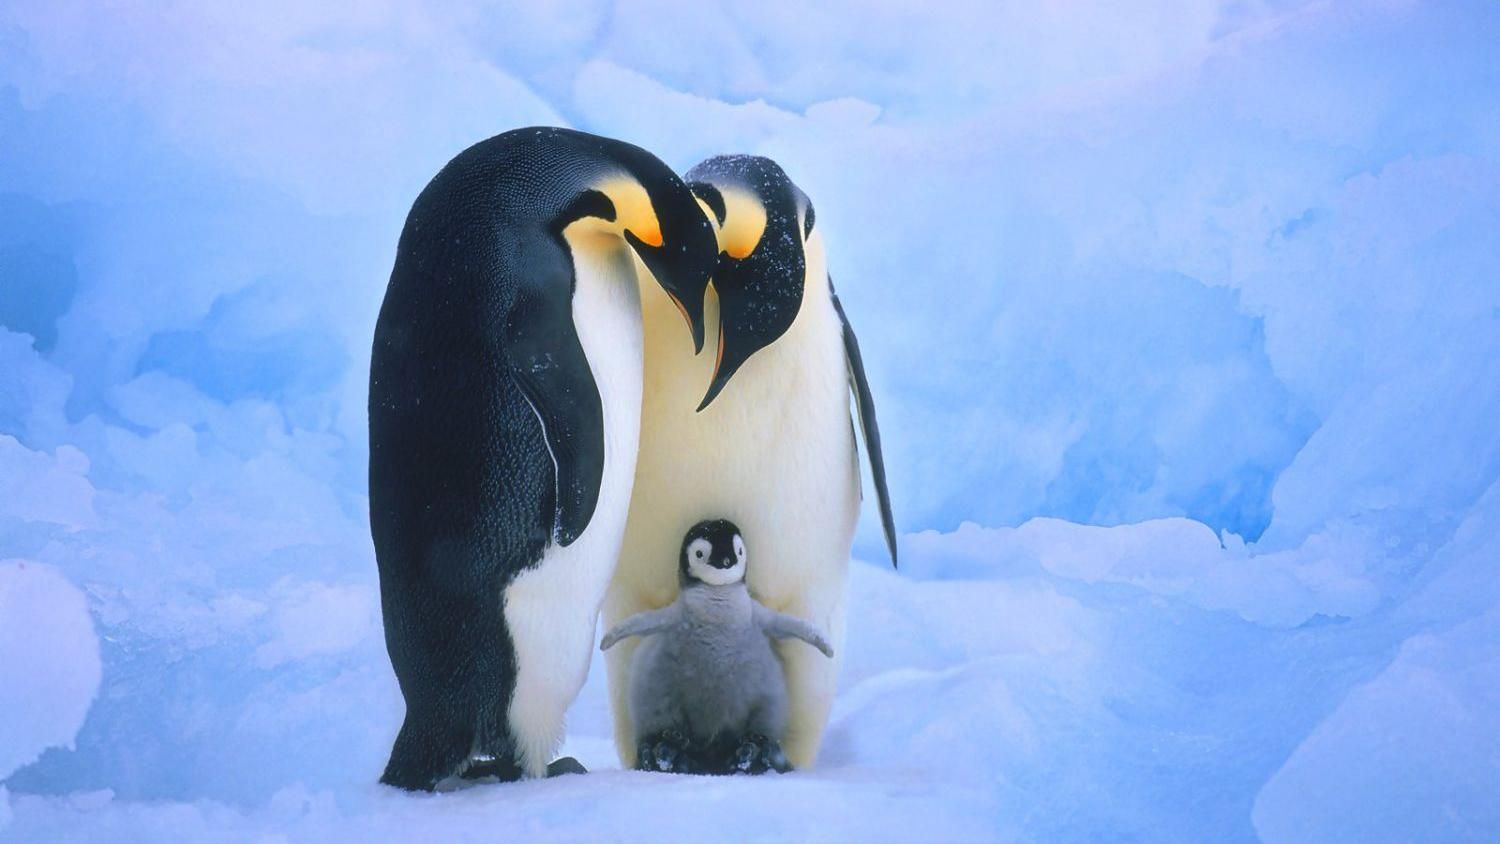 В датском зоопарке гей-пара пингвинов похитила детеныша в его гетеросексуальных родителей: видео